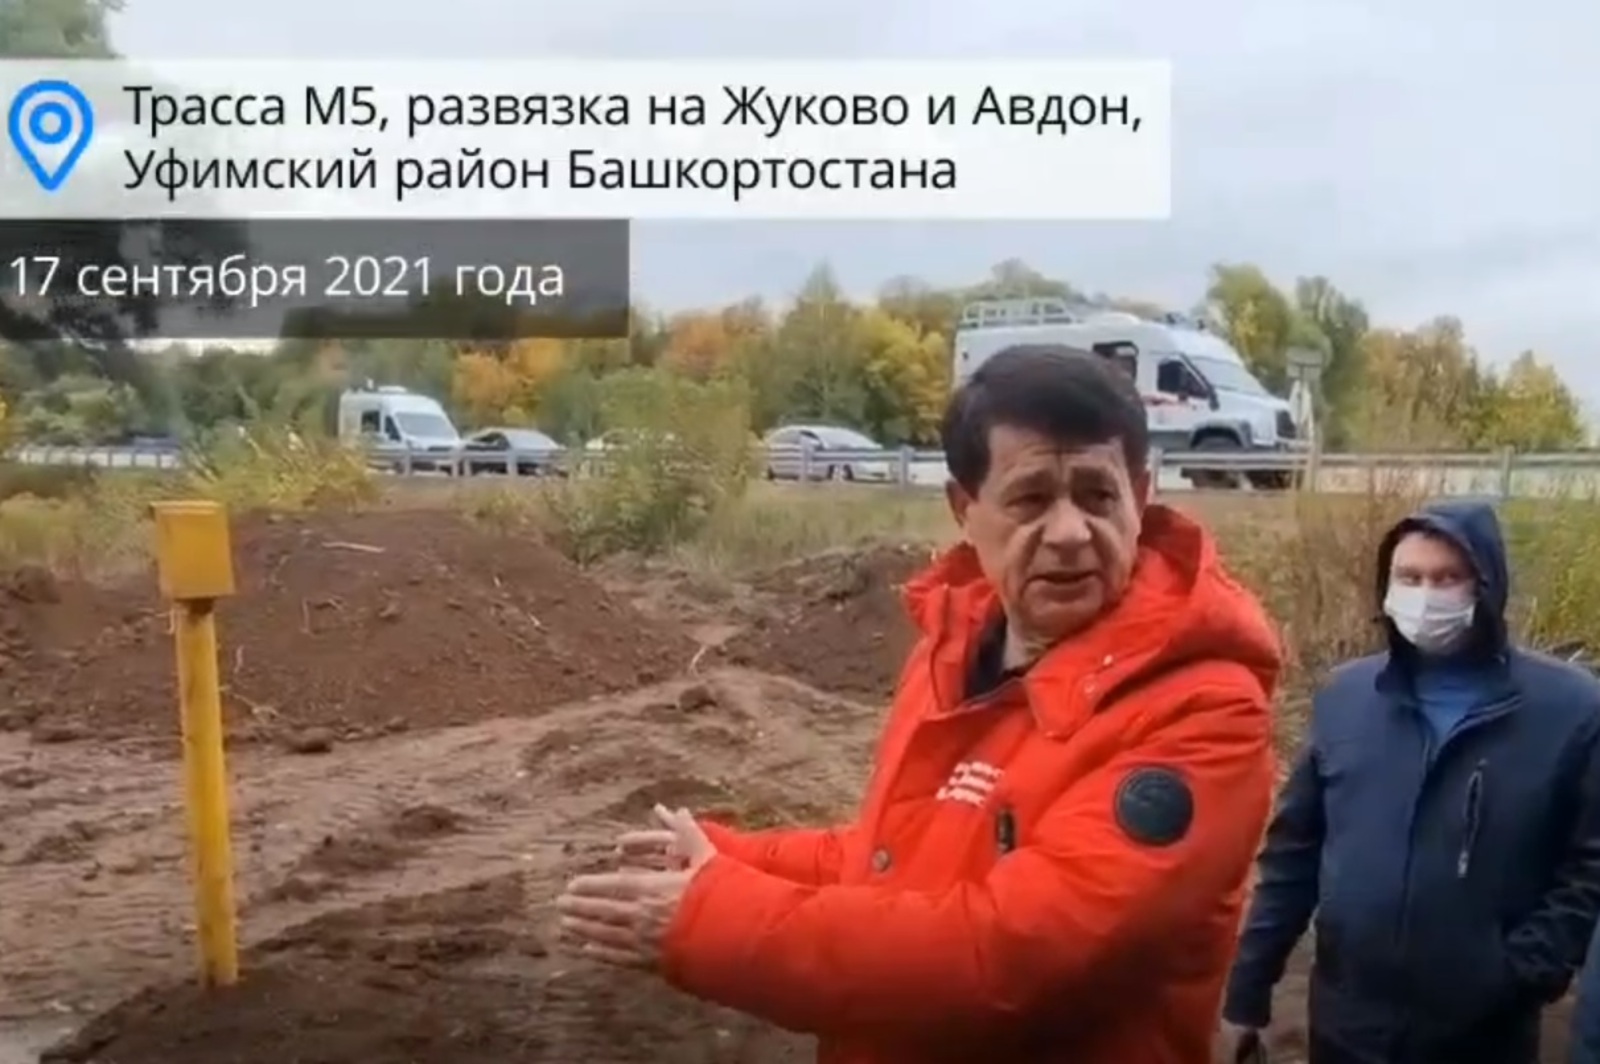 На месте аварии в Уфимском районе идет обработка земли биопрепаратом, ремонт трубы и вывоз загрязненного грунта